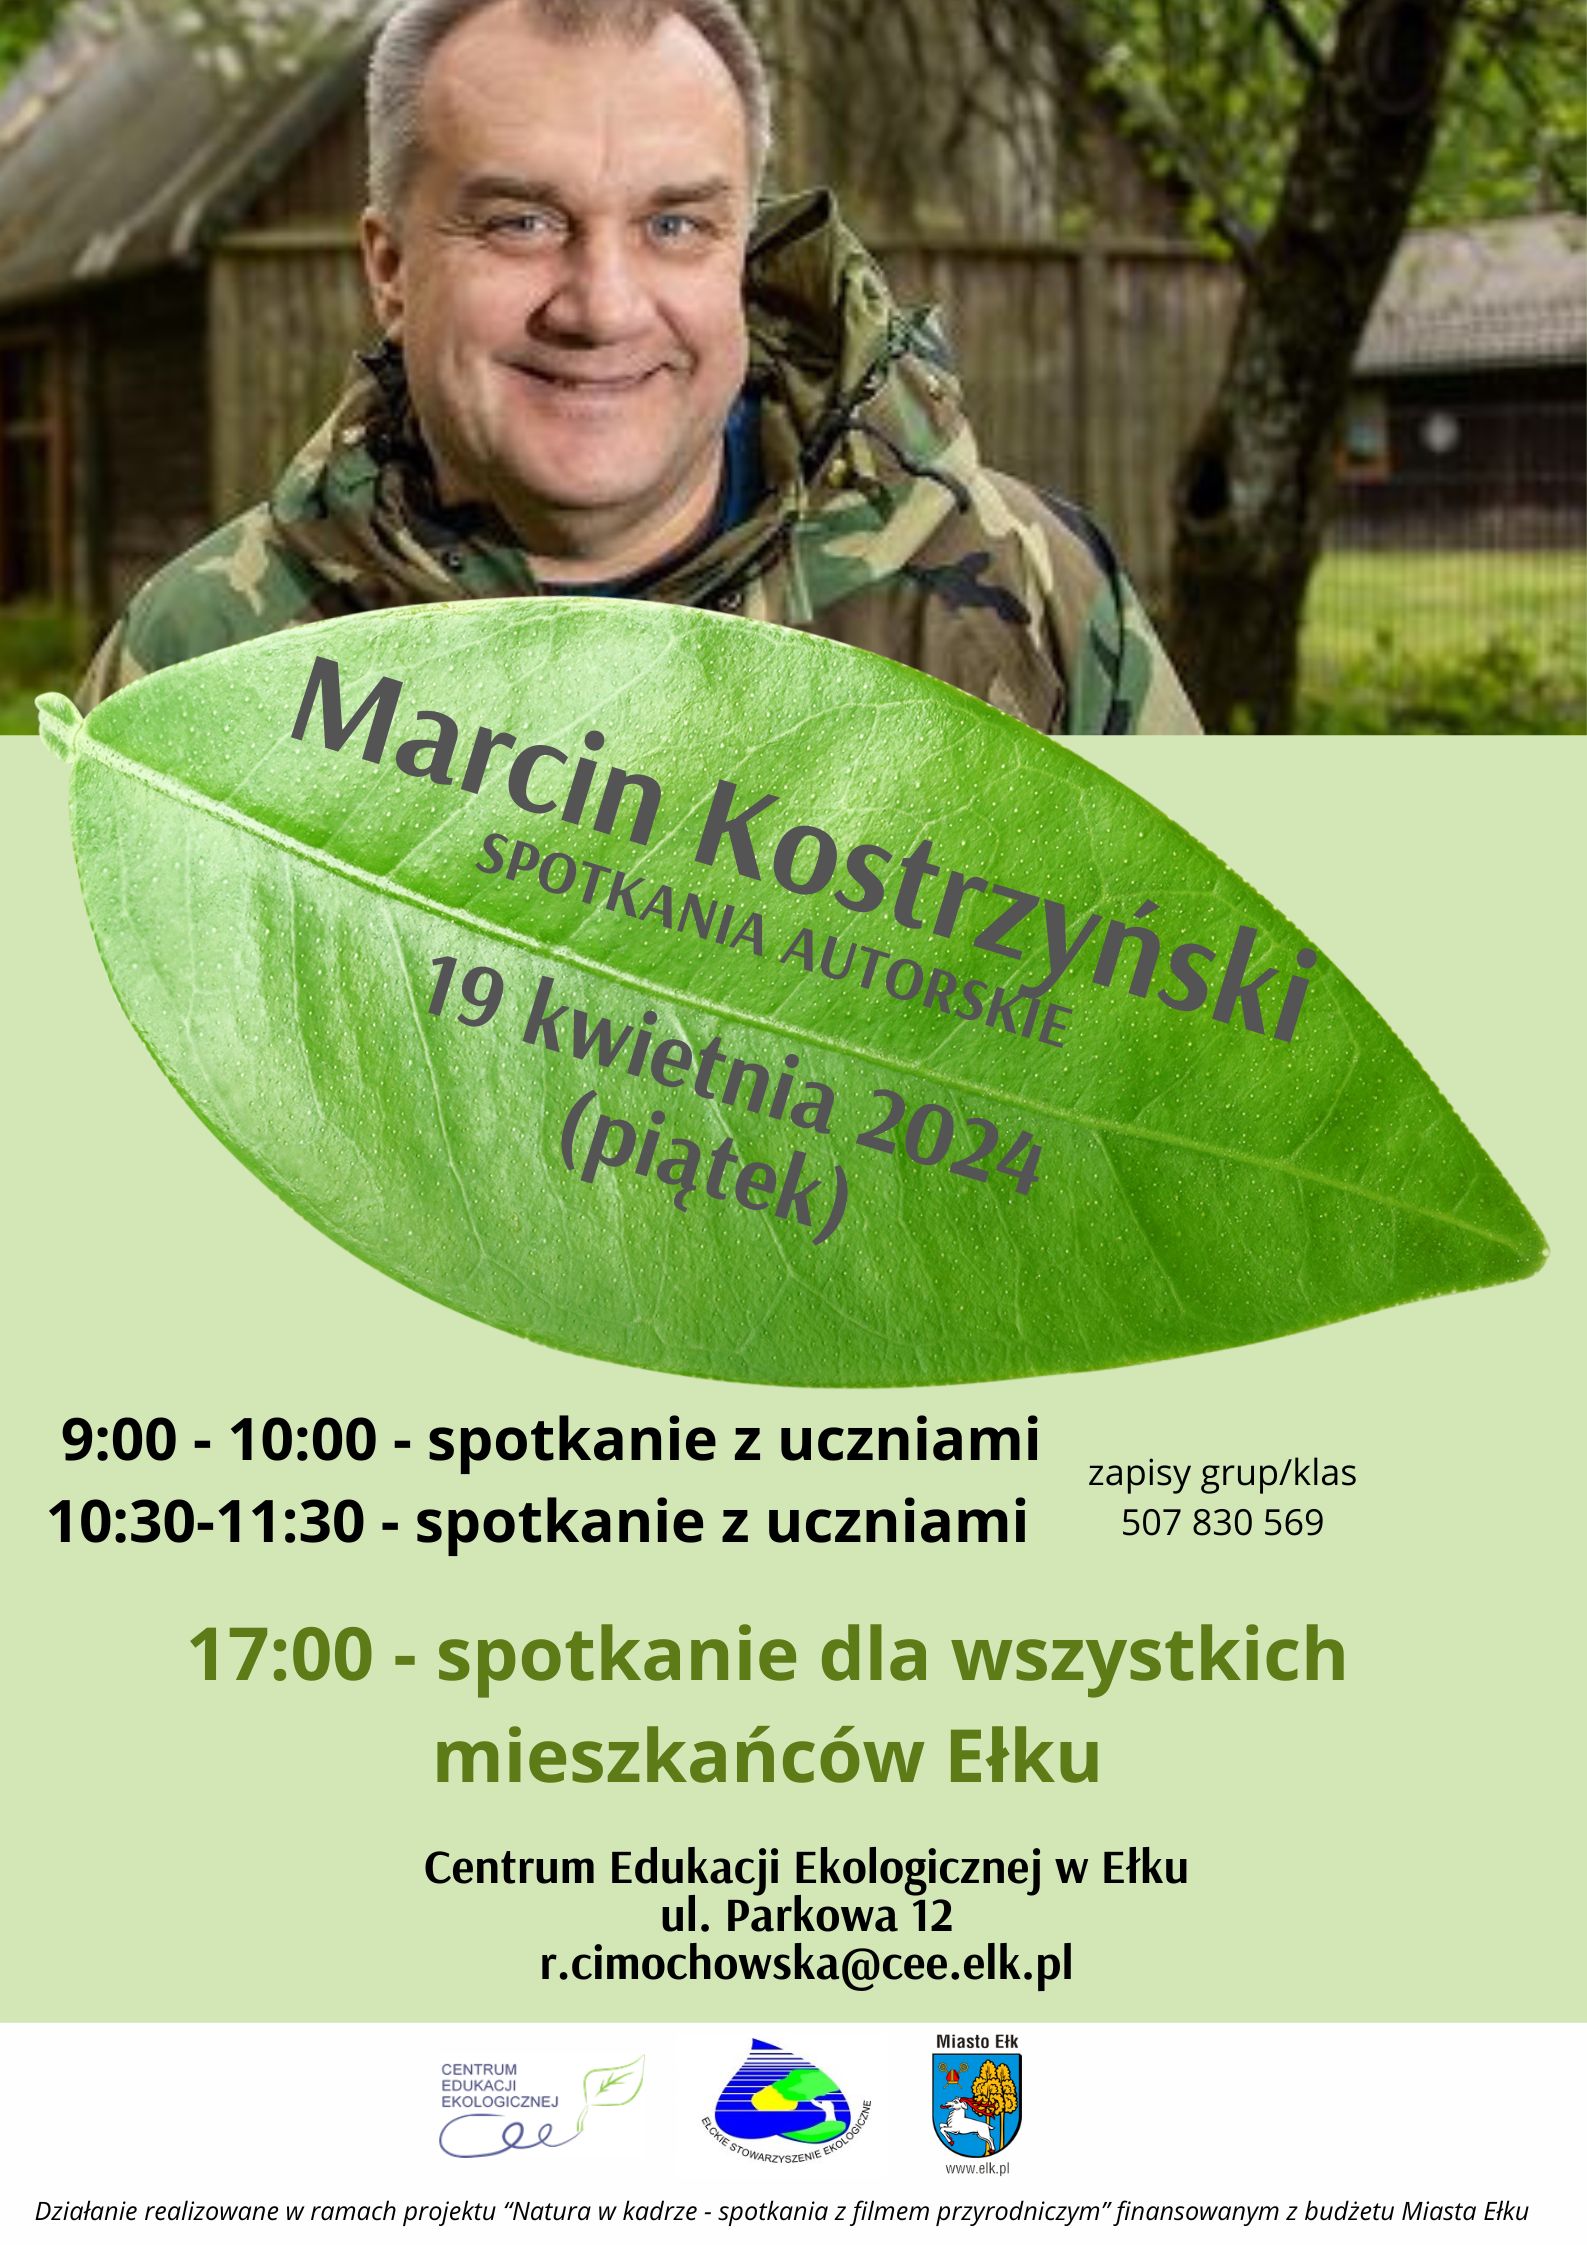 Marcin Kostrzyński (1).jpg